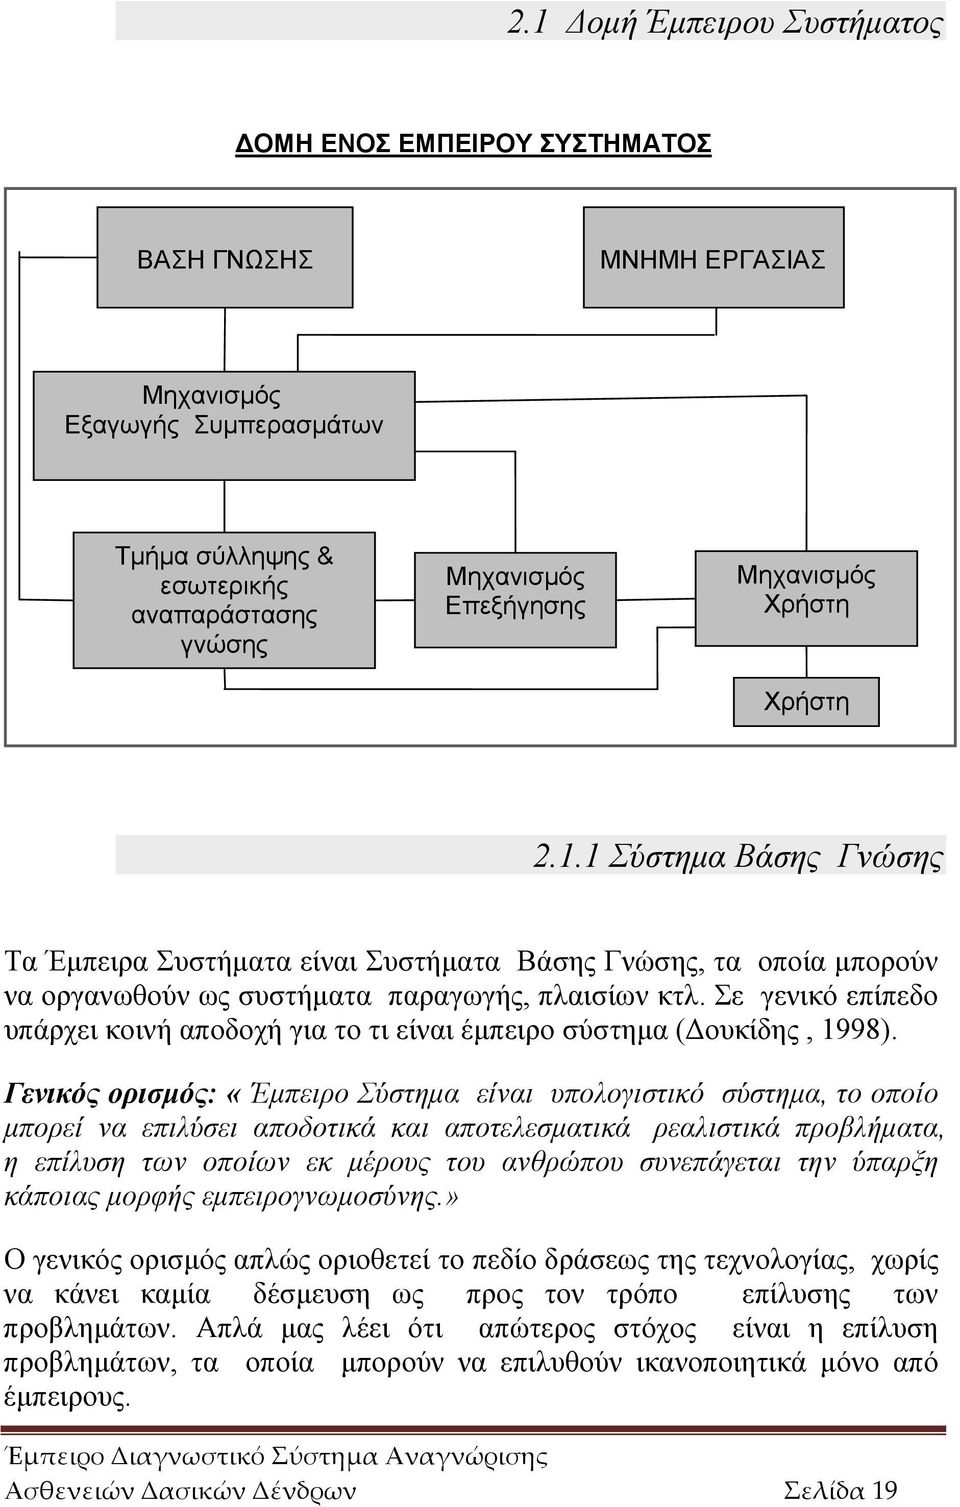 Σε γενικό επίπεδο υπάρχει κοινή αποδοχή για το τι είναι έμπειρο σύστημα (Δουκίδης, 1998).